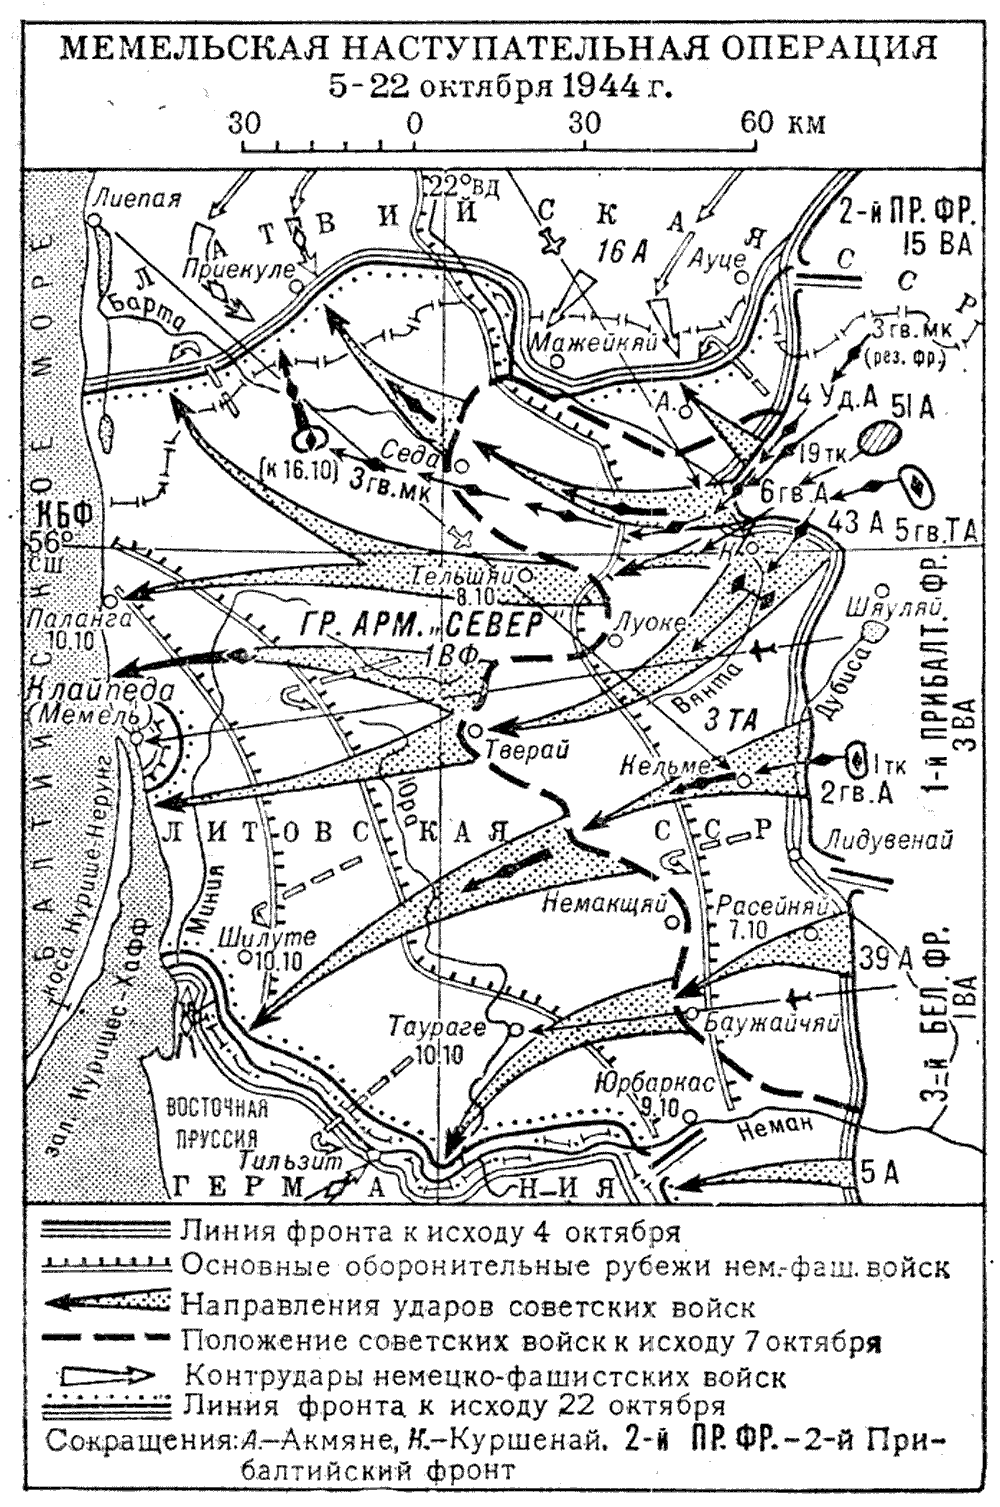 Карта наступательной операции. Мемельская наступательная операция 1944 года. Мемельская наступательная операция 1944 года карта. Прибалтийская операция 1944 Мемельская операция. Мемельская операция (5—22 октября 1944 года).